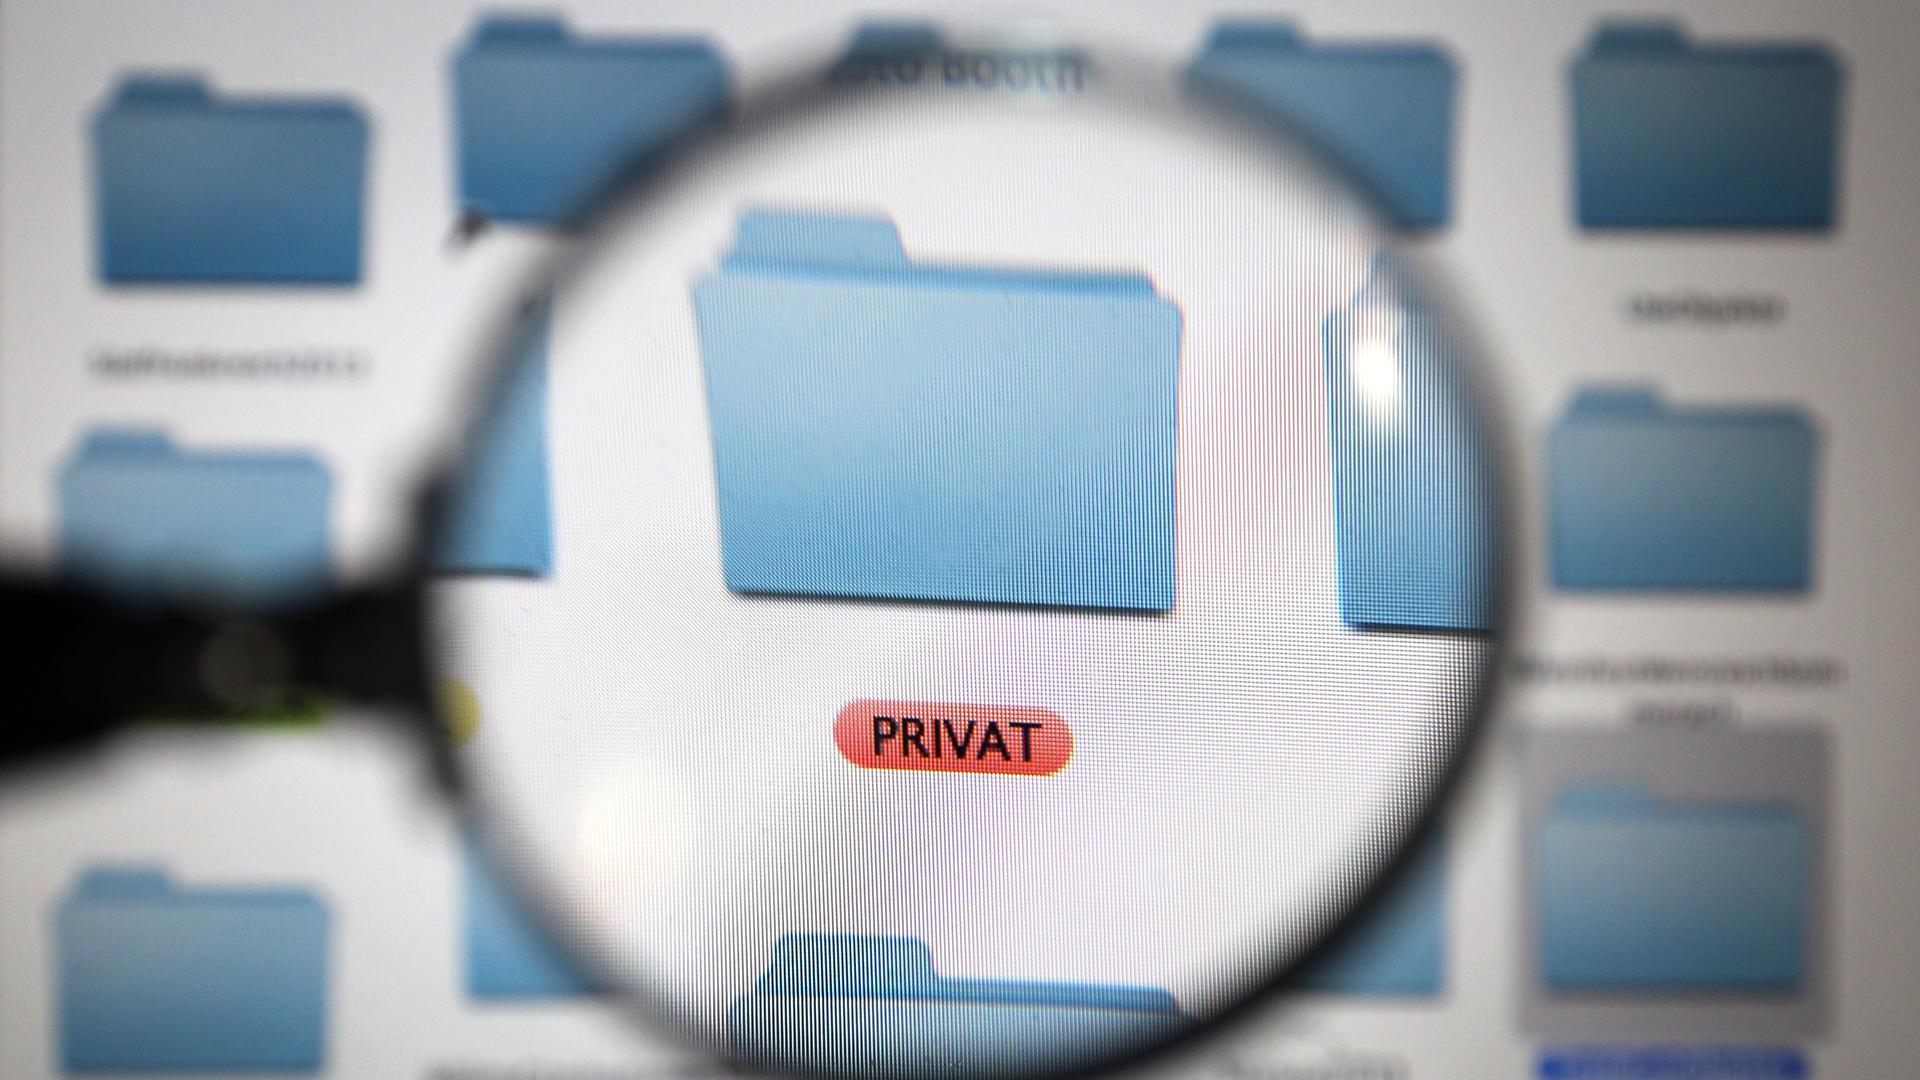 Ein mit PRIVAT gekennzeichneter Ordner auf dem Bildschirm eines Computers